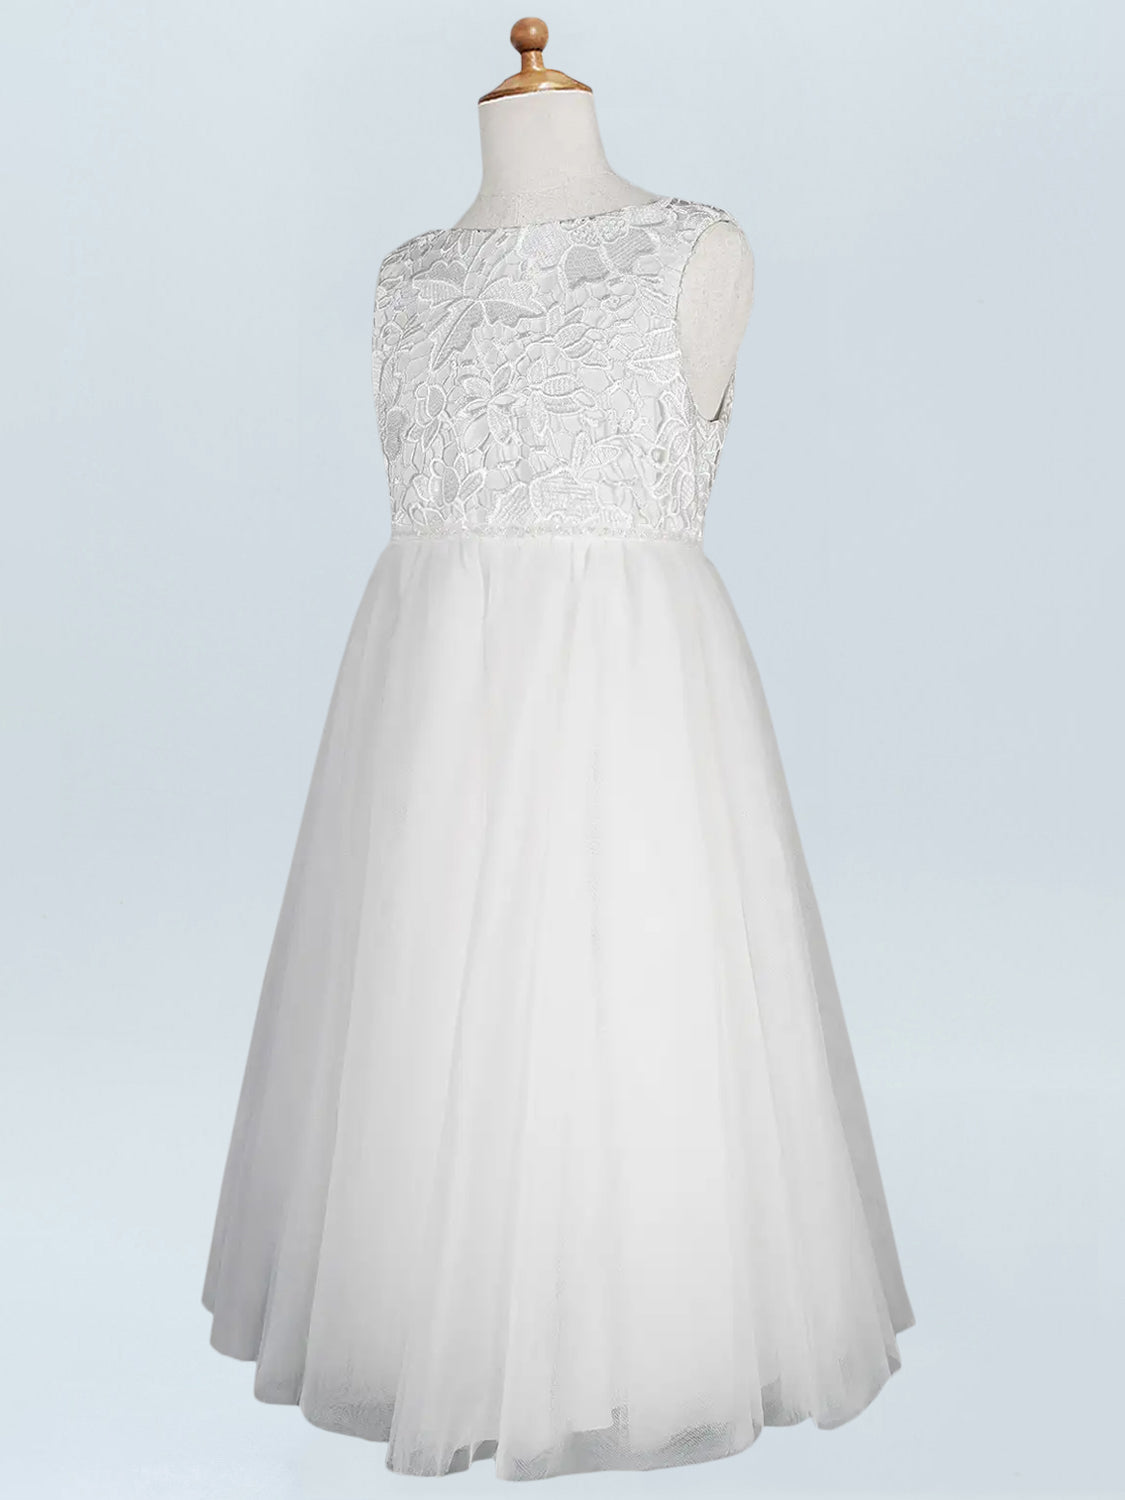 Lace A-Line Scoop Neck Half Sleeves Floweer Girl Dress-B500124